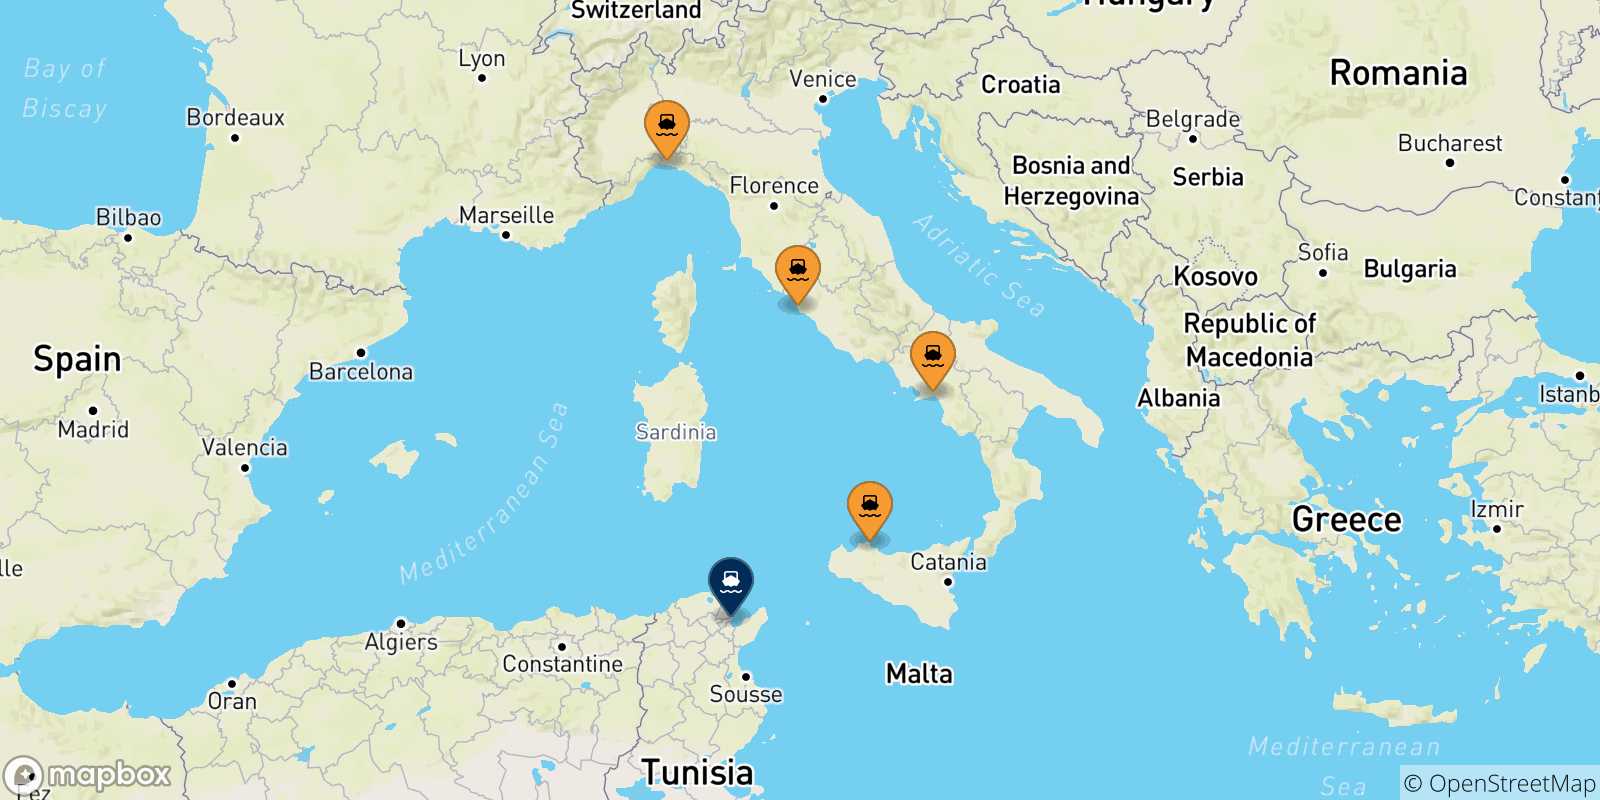 Mappa delle possibili rotte tra l'Italia e la Tunisia